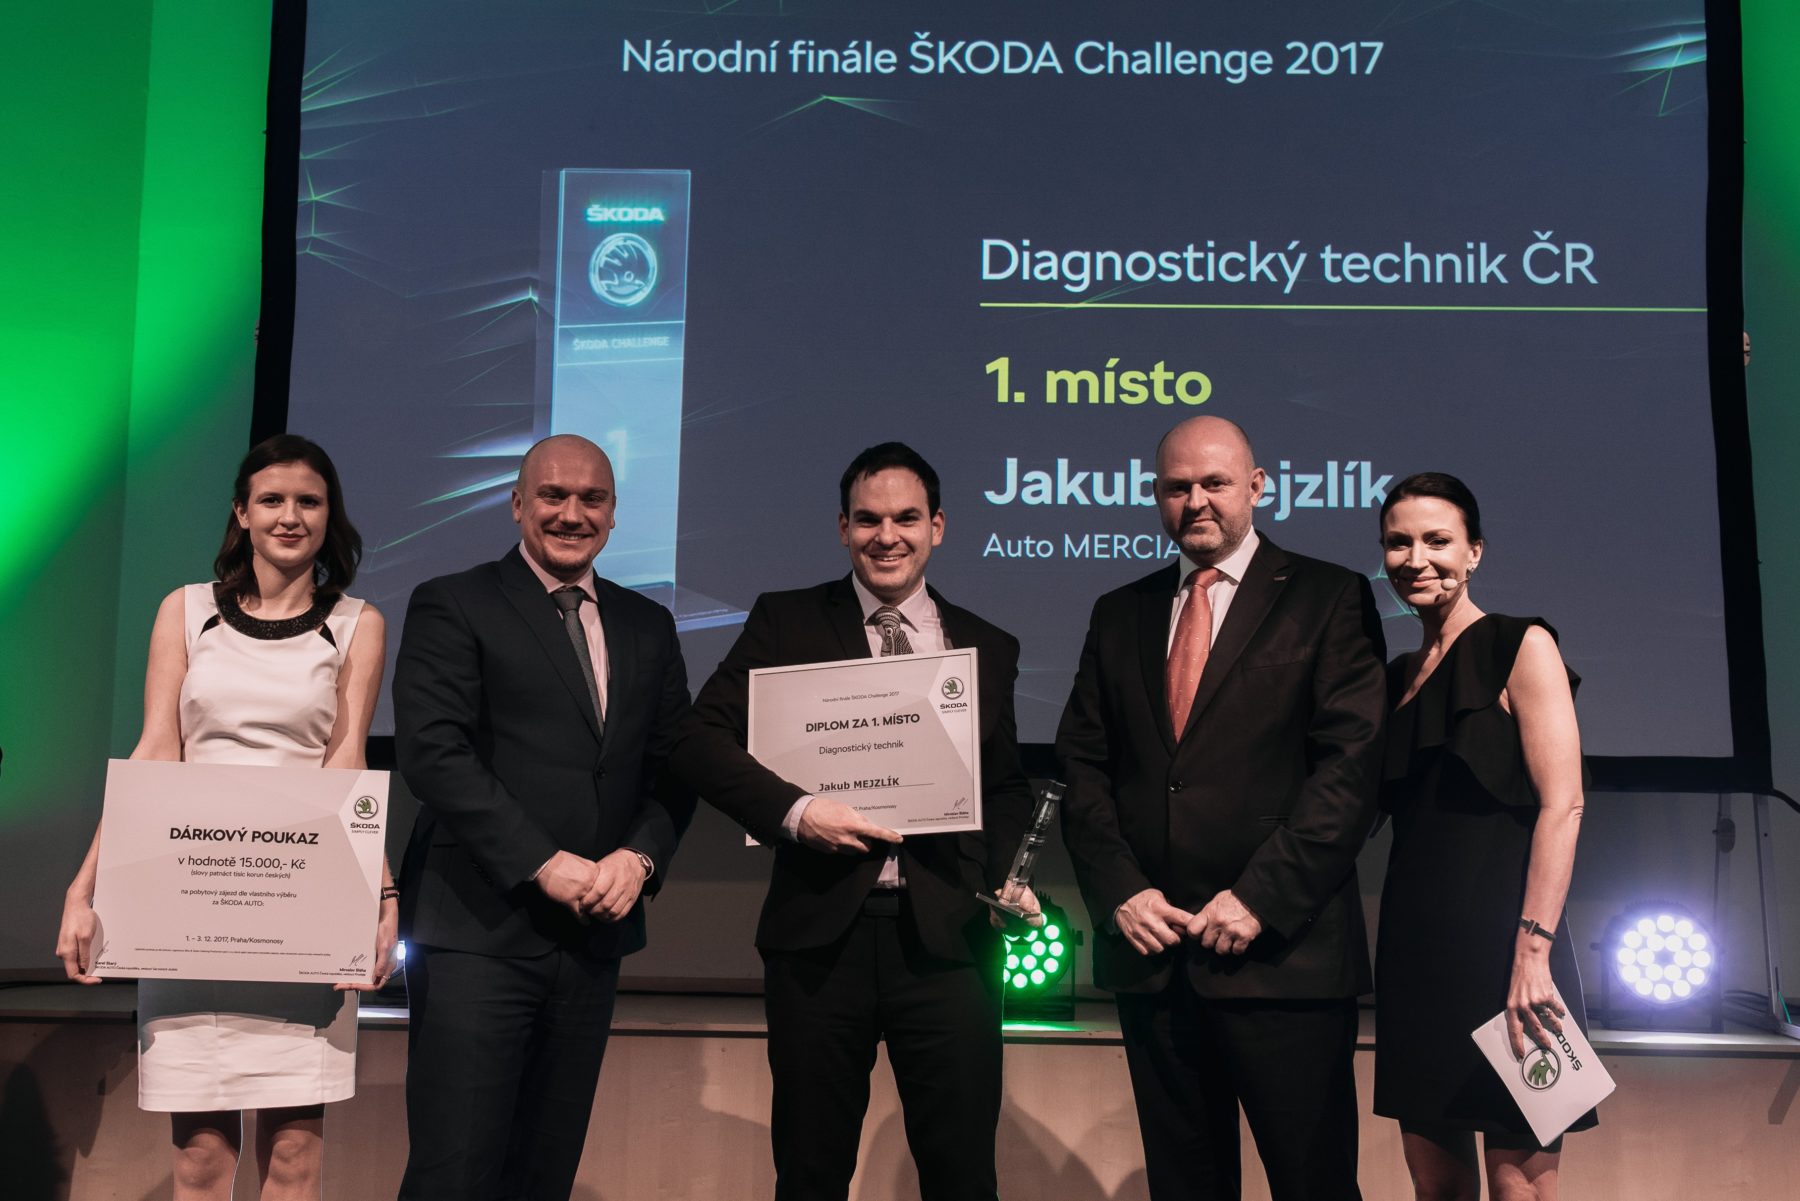 Ohlédnutí za velmi úspěšnou ŠKODA Challenge ČR 2017